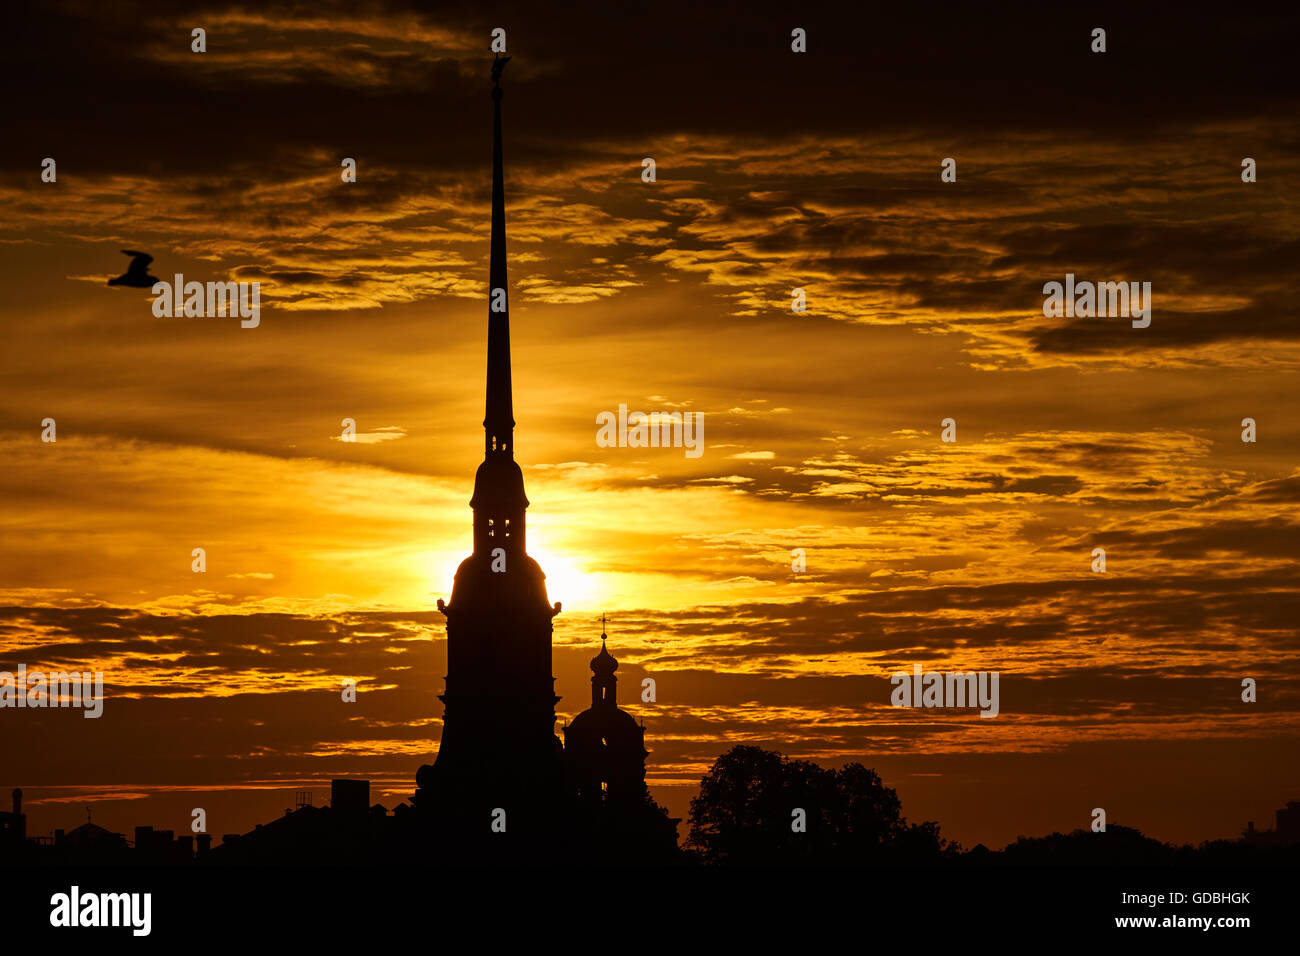 La Russie, Saint-Pétersbourg, 29 juin 2016 : la forteresse Pierre et Paul au lever du soleil, Spire avec ange dans le ciel orange, réflexions Banque D'Images